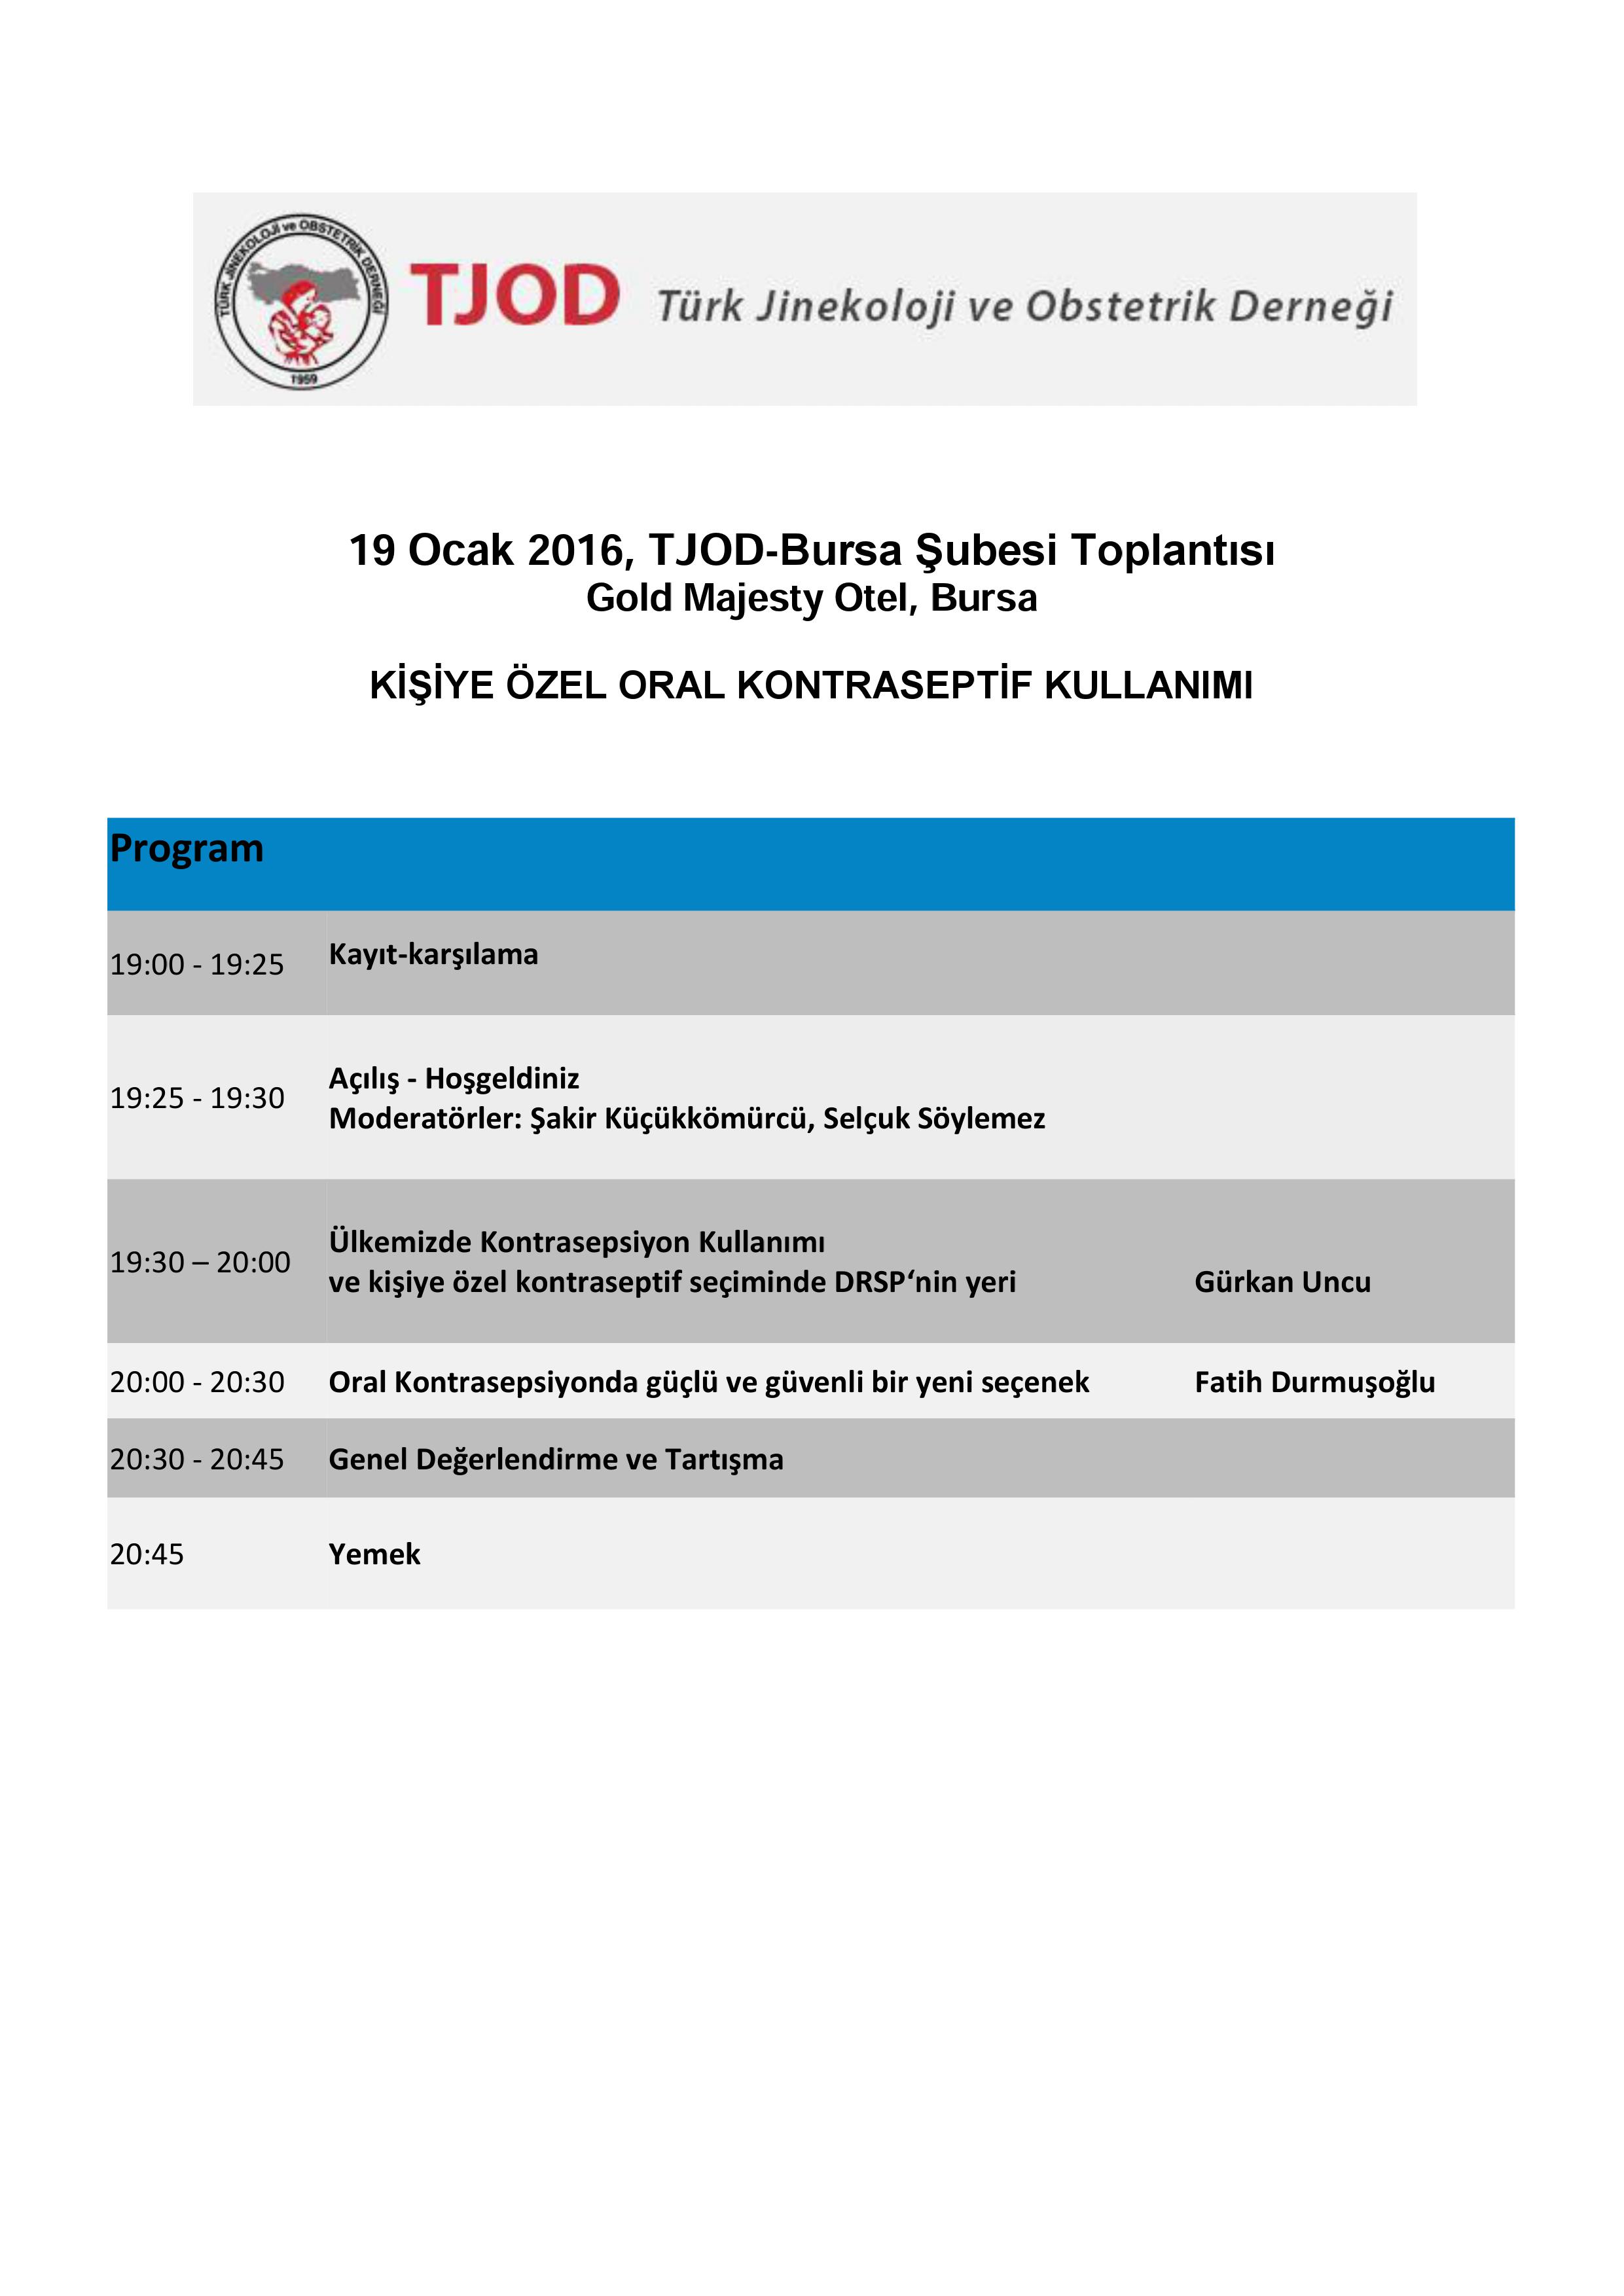 19 Ocak 2016 Salı_Bursa TJOD toplantısı programı-final